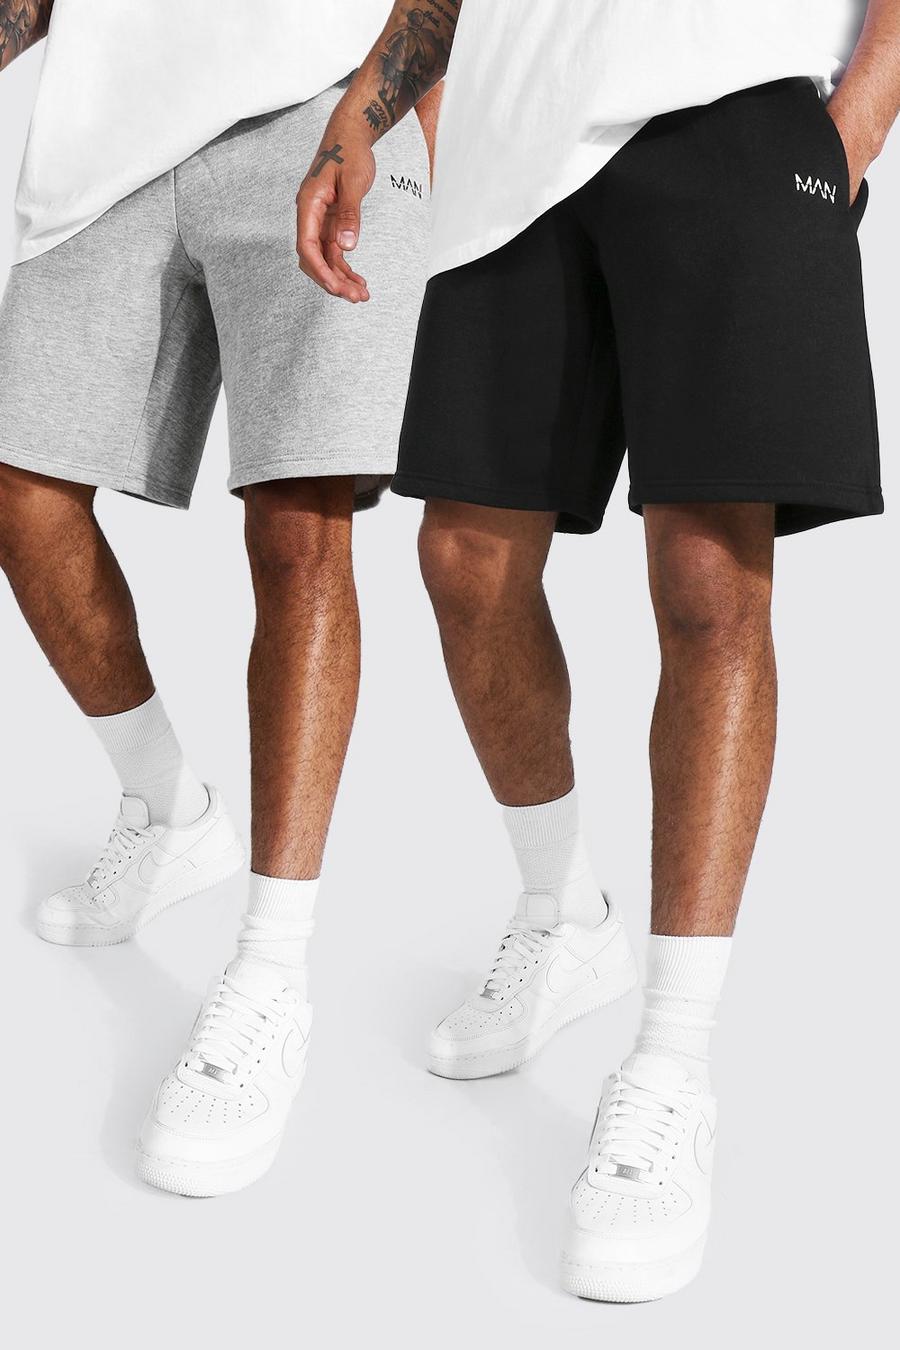 Multi Man Middellange Baggy Jersey Shorts (2 Stuks) image number 1